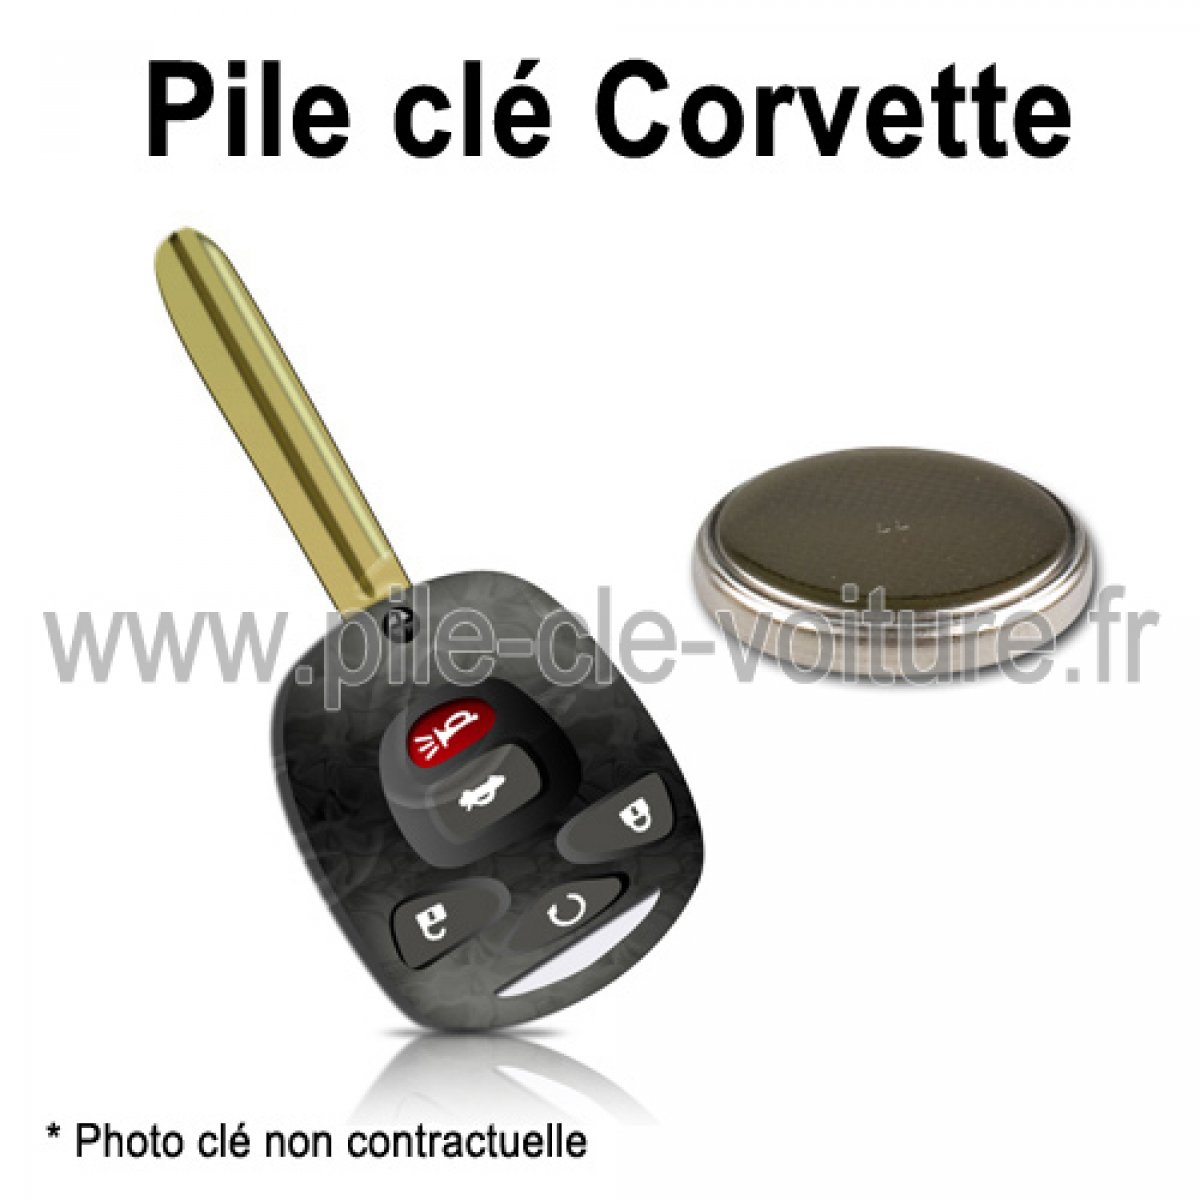 Pile pour clé Corvette - Chevrolet - changement de la pile de